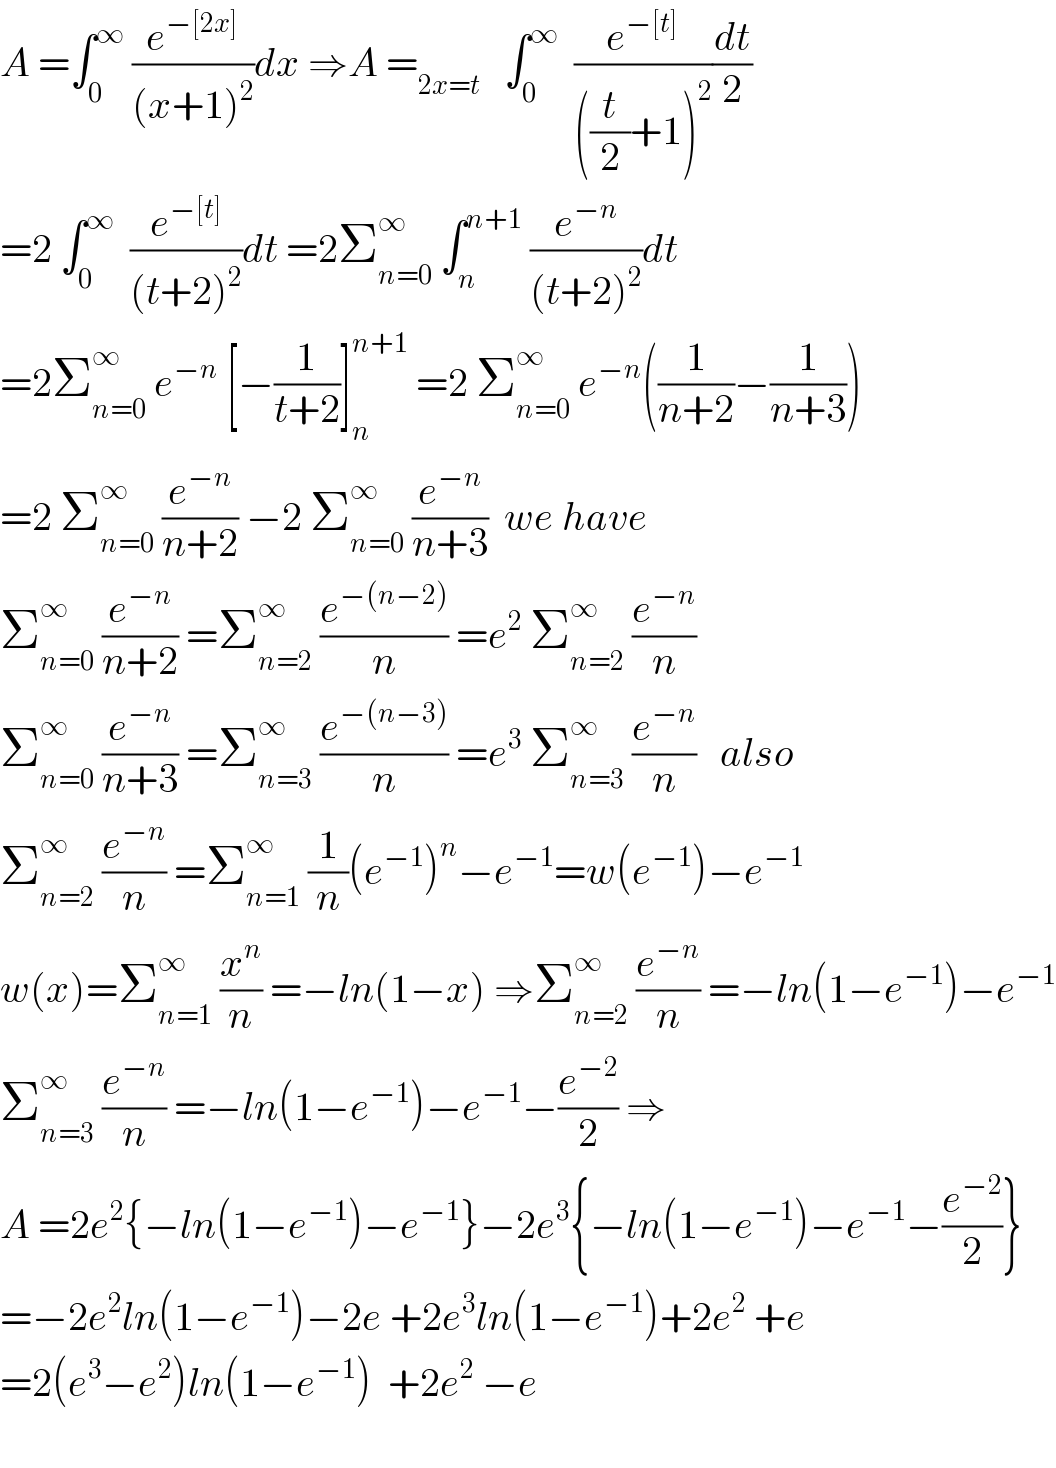 A =∫_0 ^∞  (e^(−[2x]) /((x+1)^2 ))dx ⇒A =_(2x=t)    ∫_0 ^∞   (e^(−[t]) /(((t/2)+1)^2 ))(dt/2)  =2 ∫_0 ^∞   (e^(−[t]) /((t+2)^2 ))dt =2Σ_(n=0) ^∞  ∫_n ^(n+1)  (e^(−n) /((t+2)^2 ))dt  =2Σ_(n=0) ^∞  e^(−n)  [−(1/(t+2))]_n ^(n+1)  =2 Σ_(n=0) ^∞  e^(−n) ((1/(n+2))−(1/(n+3)))  =2 Σ_(n=0) ^∞  (e^(−n) /(n+2)) −2 Σ_(n=0) ^∞  (e^(−n) /(n+3))  we have  Σ_(n=0) ^∞  (e^(−n) /(n+2)) =Σ_(n=2) ^∞  (e^(−(n−2)) /n) =e^2  Σ_(n=2) ^∞  (e^(−n) /n)  Σ_(n=0) ^∞  (e^(−n) /(n+3)) =Σ_(n=3) ^∞  (e^(−(n−3)) /n) =e^3  Σ_(n=3) ^∞  (e^(−n) /n)   also  Σ_(n=2) ^∞  (e^(−n) /n) =Σ_(n=1) ^∞  (1/n)(e^(−1) )^n −e^(−1) =w(e^(−1) )−e^(−1)    w(x)=Σ_(n=1) ^∞  (x^n /n) =−ln(1−x) ⇒Σ_(n=2) ^∞  (e^(−n) /n) =−ln(1−e^(−1) )−e^(−1)   Σ_(n=3) ^∞  (e^(−n) /n) =−ln(1−e^(−1) )−e^(−1) −(e^(−2) /2) ⇒  A =2e^2 {−ln(1−e^(−1) )−e^(−1) }−2e^3 {−ln(1−e^(−1) )−e^(−1) −(e^(−2) /2)}  =−2e^2 ln(1−e^(−1) )−2e +2e^3 ln(1−e^(−1) )+2e^2  +e  =2(e^3 −e^2 )ln(1−e^(−1) )  +2e^2  −e     